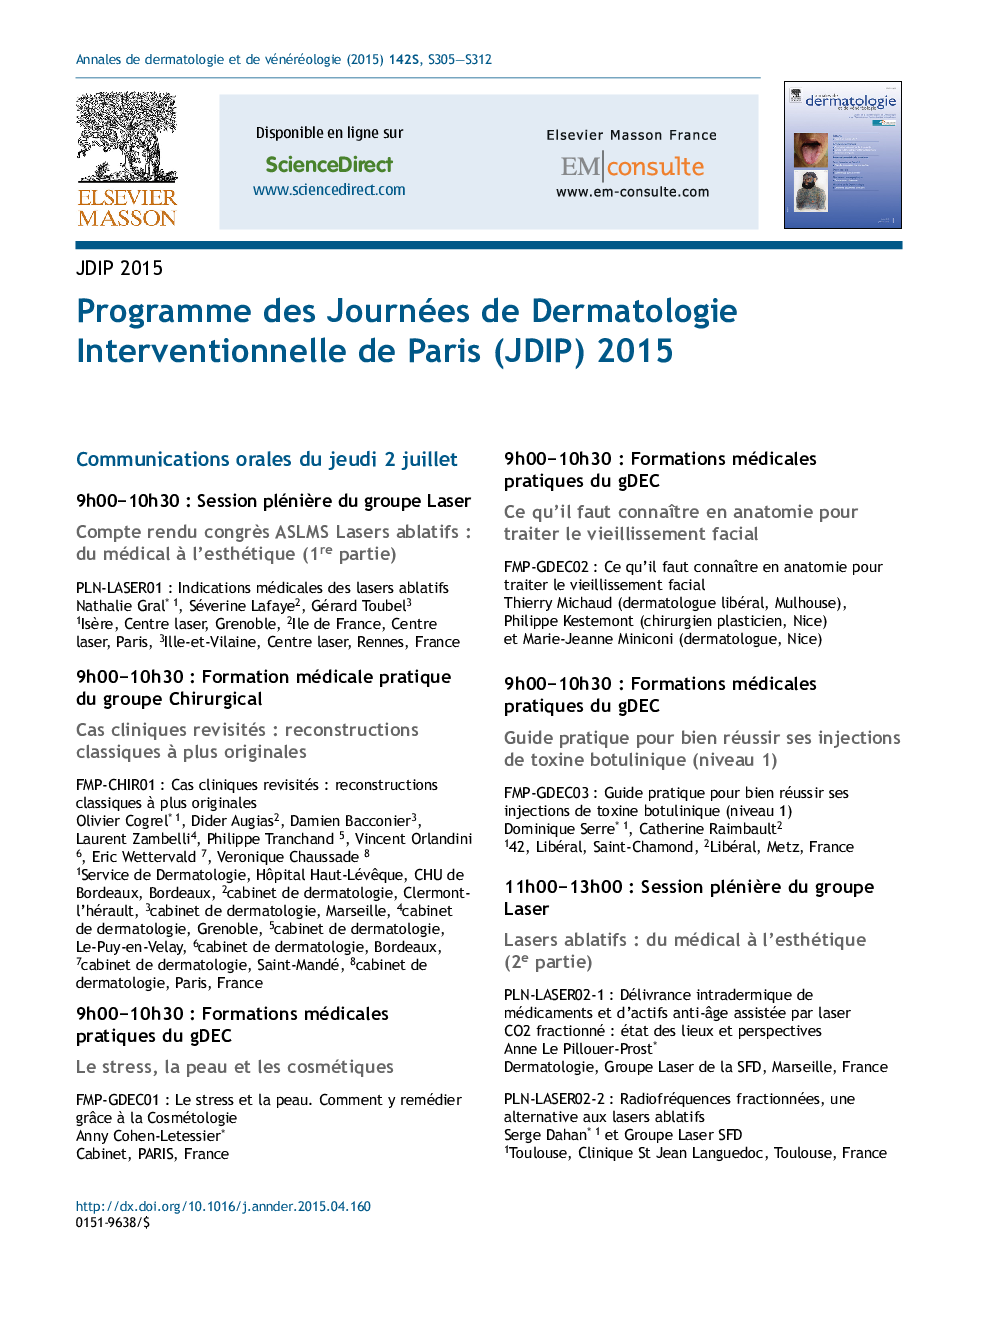 Programme des Journées de dermatologie interventionnelle de Paris (JDIP) 2015